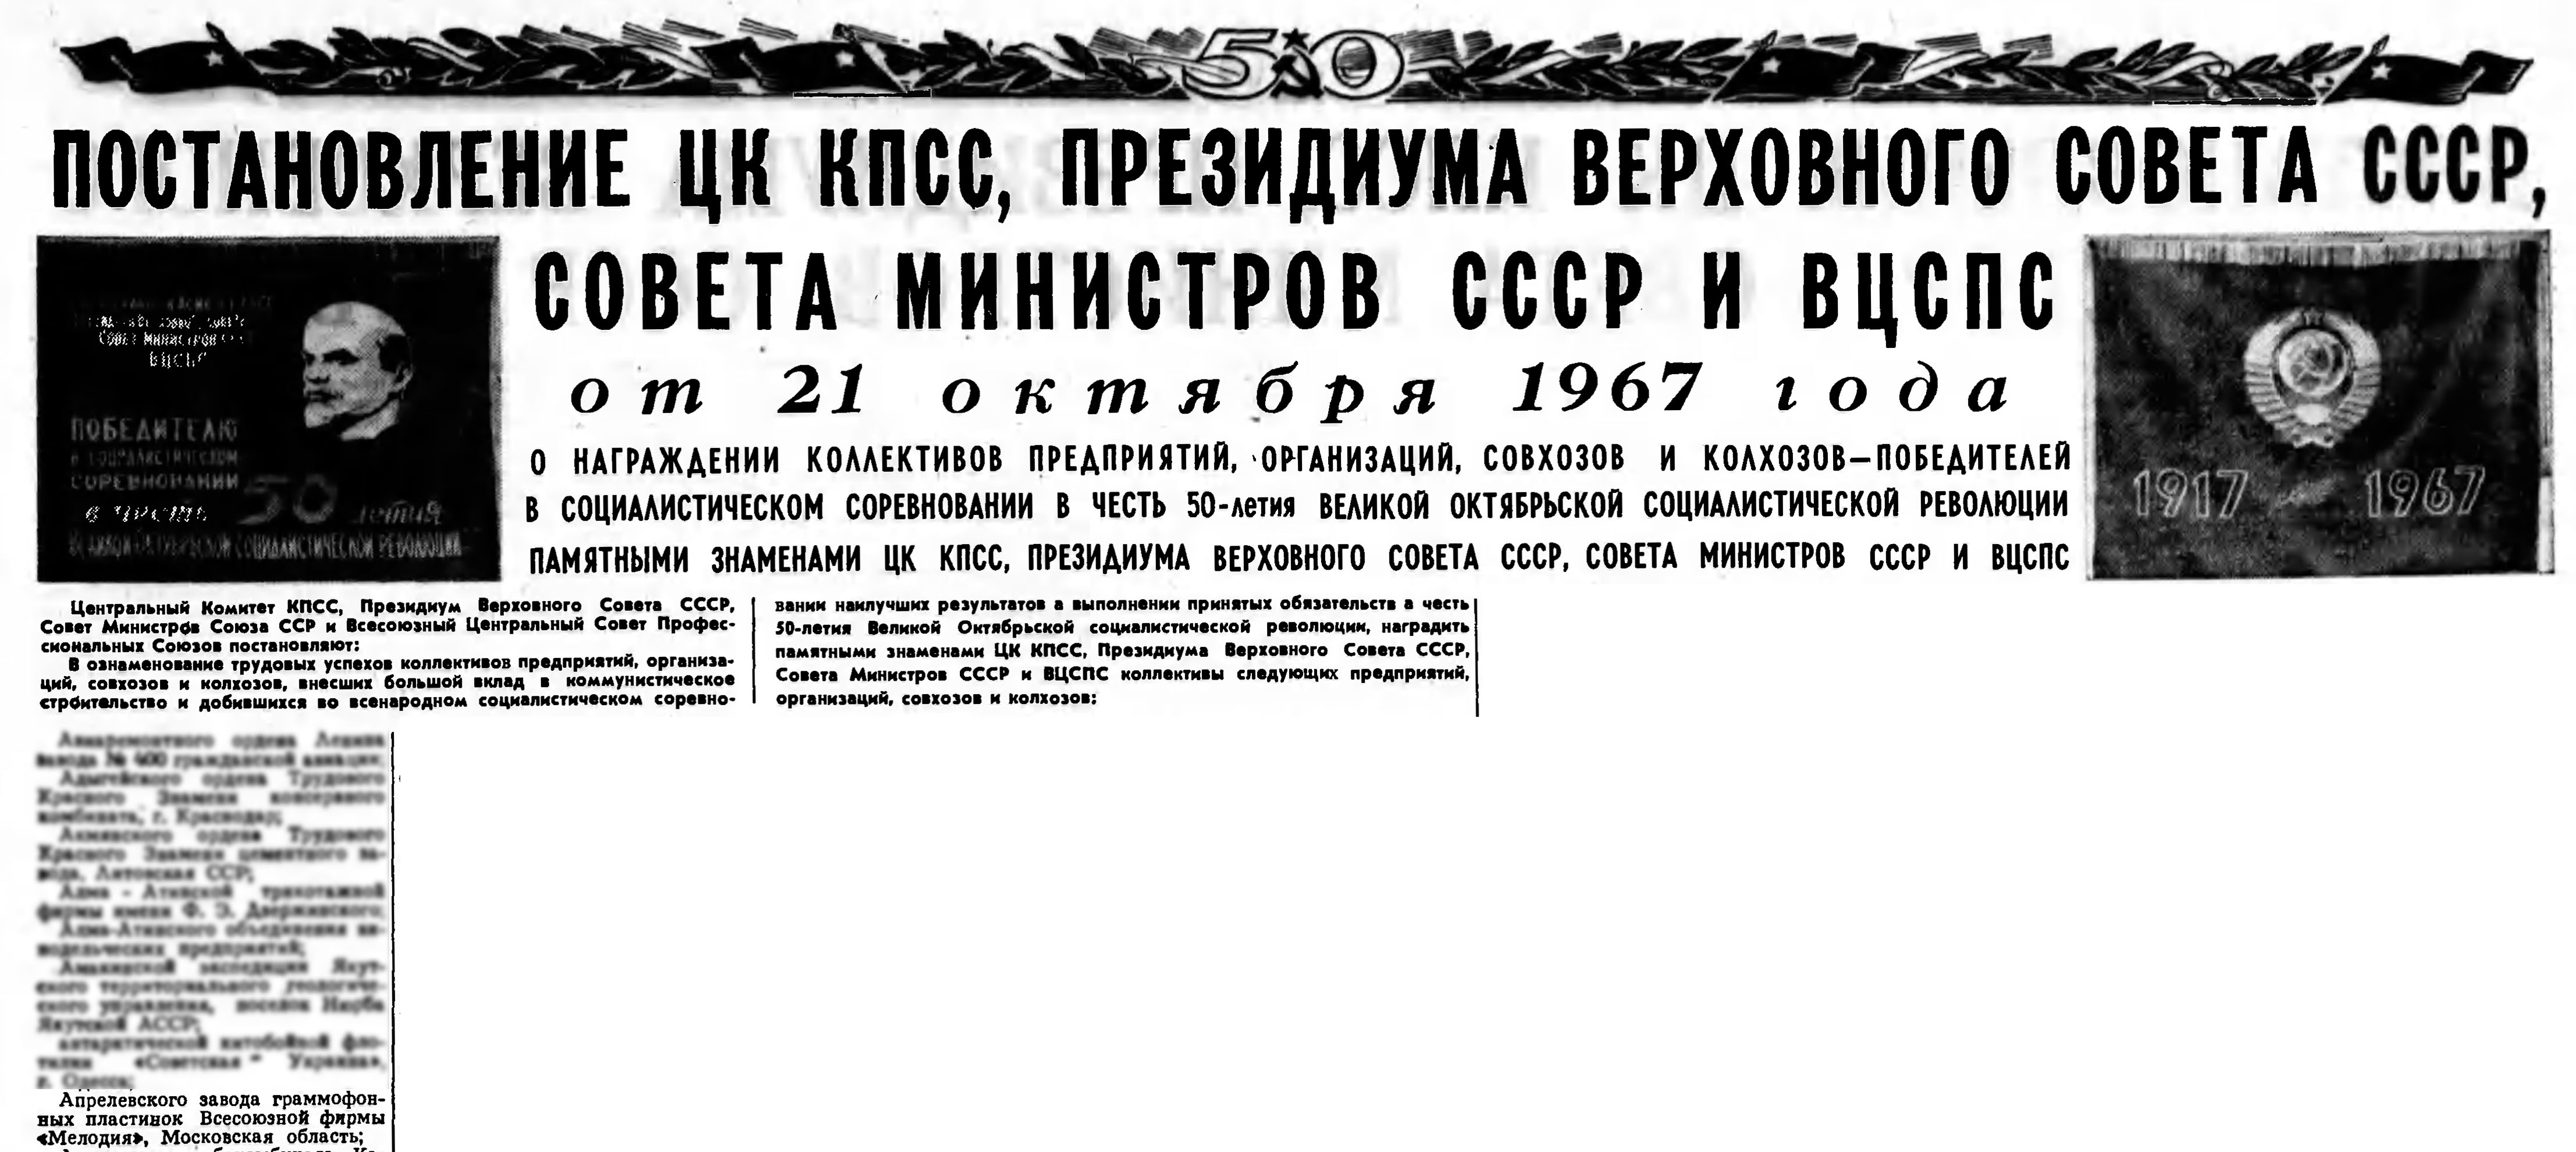 ПОСТАНОВЛЕНИЕ ЦК КПСС, ПРЕЗИДИУМА ВЕРХОВНОГО СОВЕТА СССР, СОВЕТА МИНИСТРОВ СССР И ВЦСПС от 21 октября 1967 года (фрагмент)